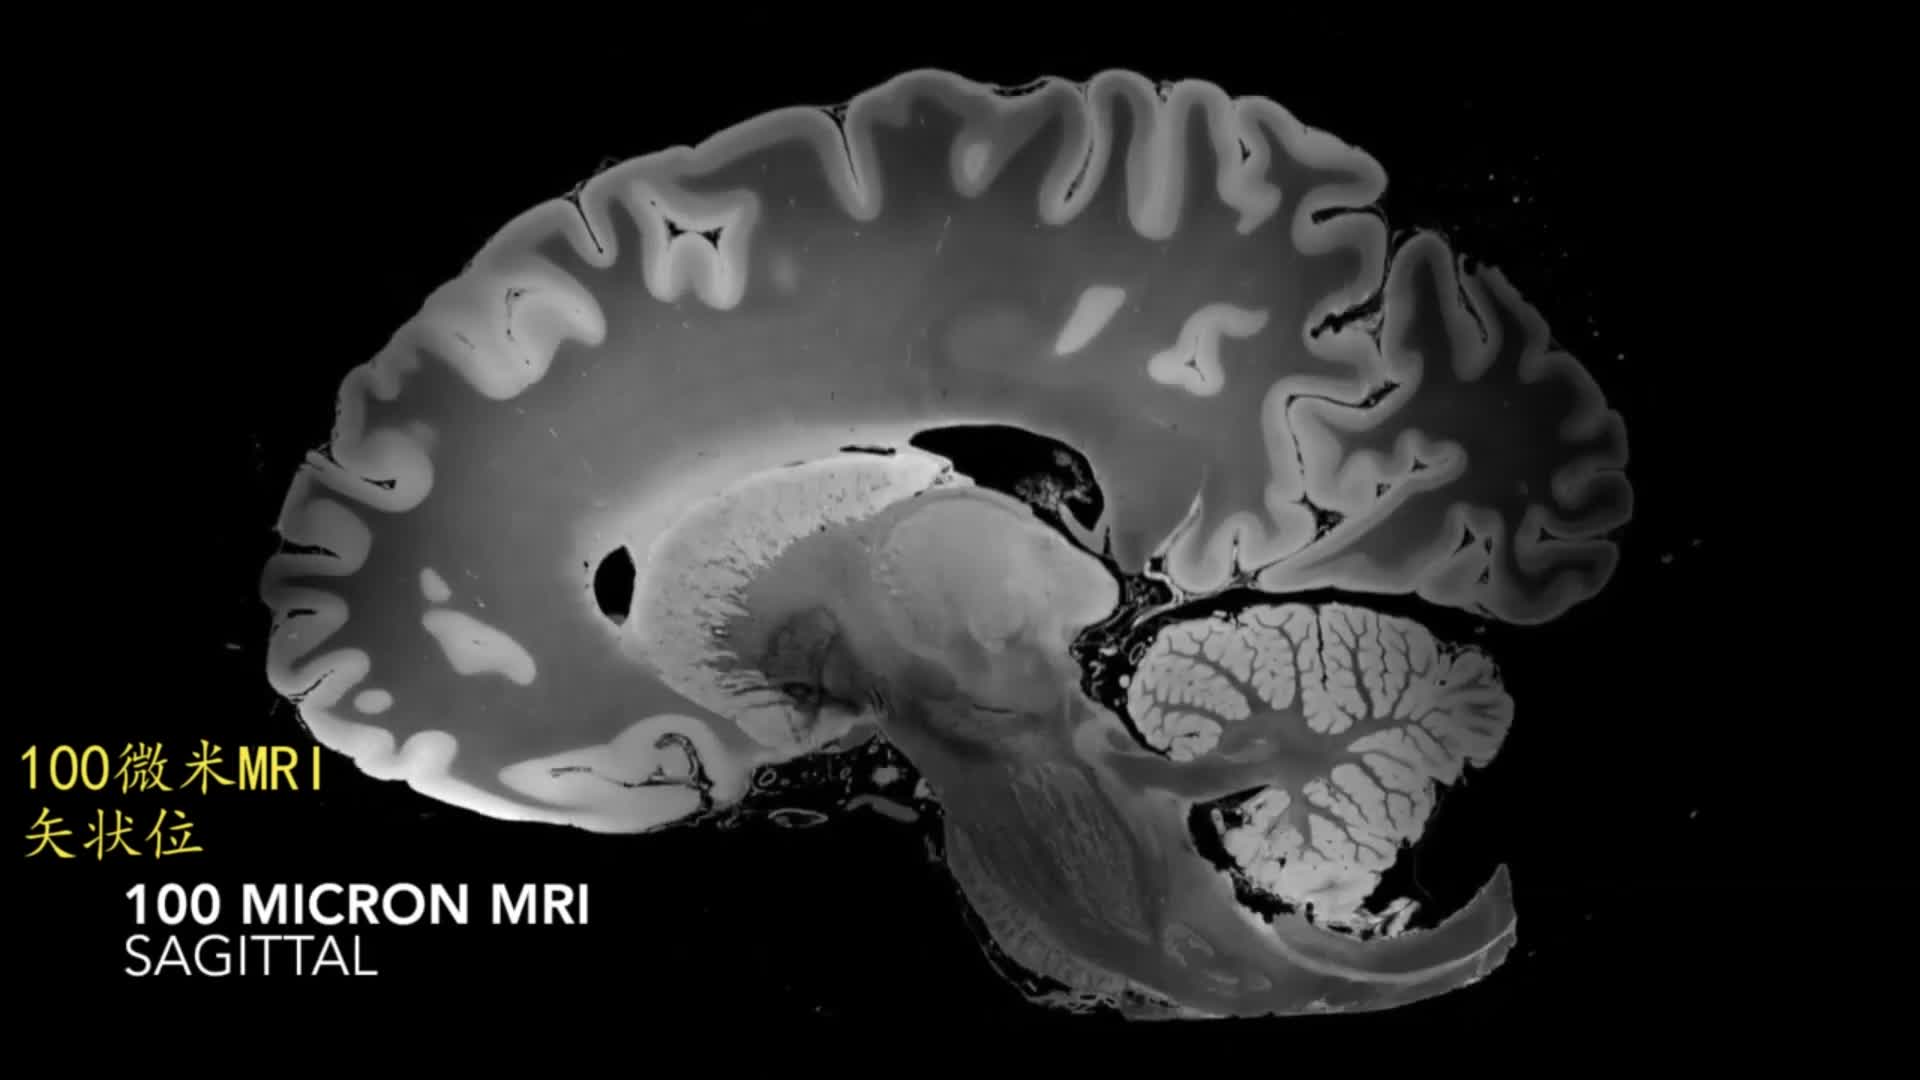 磁共振扩散加权成像对不同时期脑梗死的诊断意义